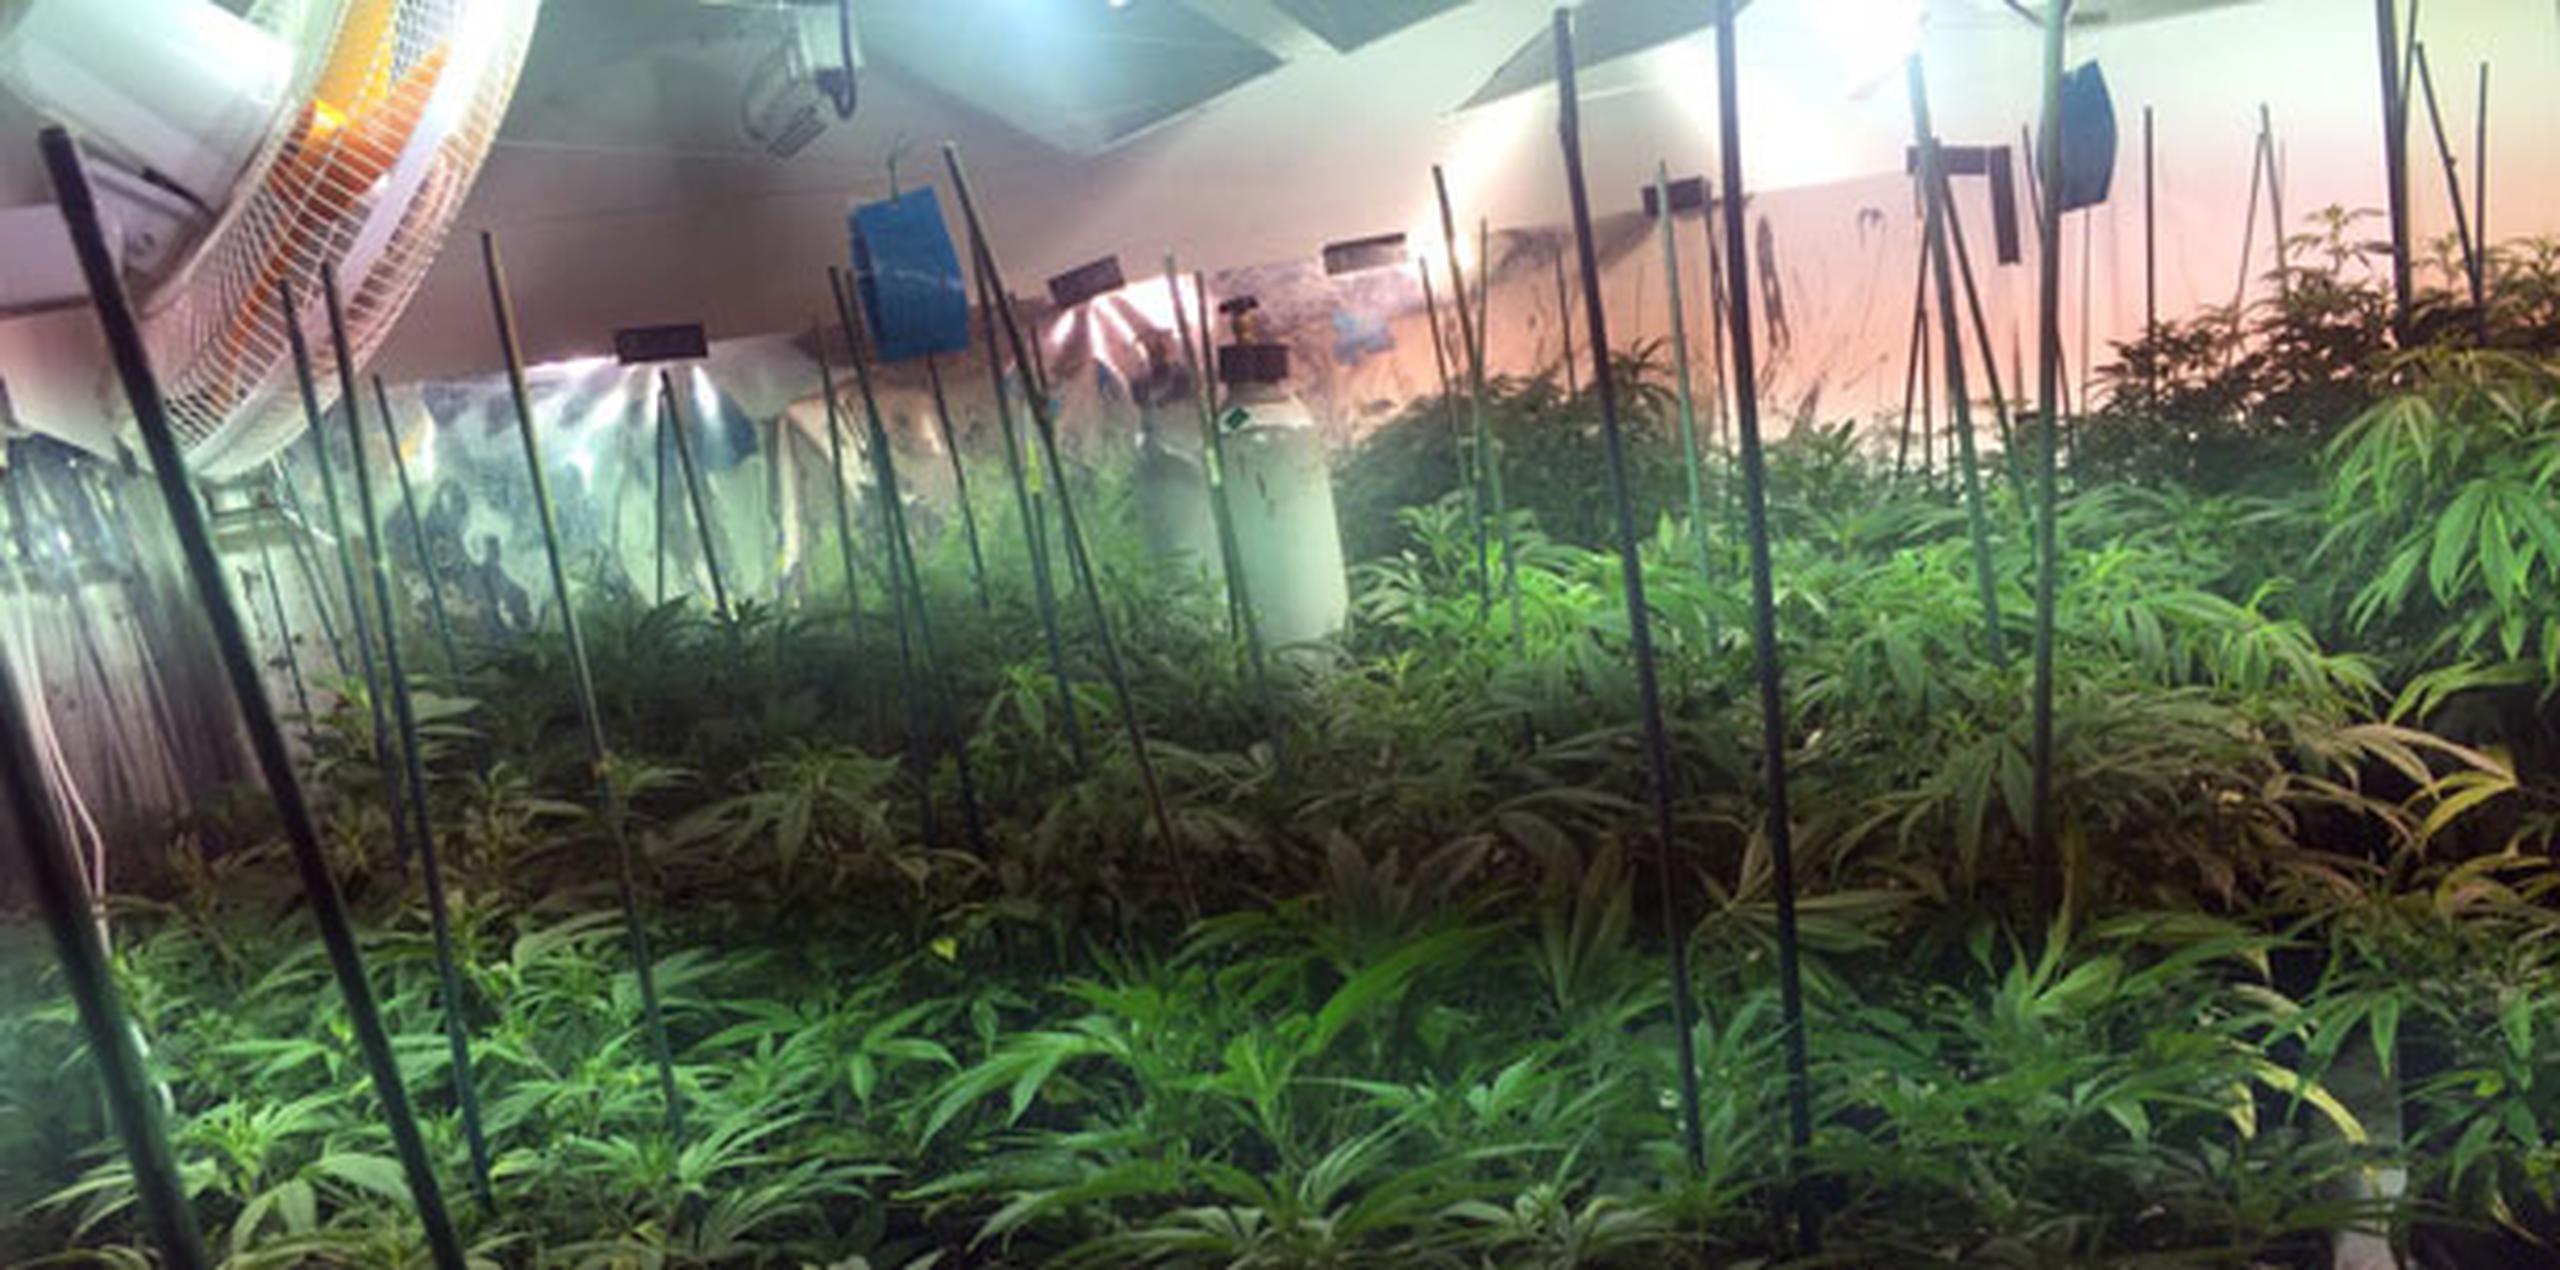 En el interior de la residencia ocuparon 87 plantas de marihuana y 10 envases con picadura de marihuana. (Suministrada)